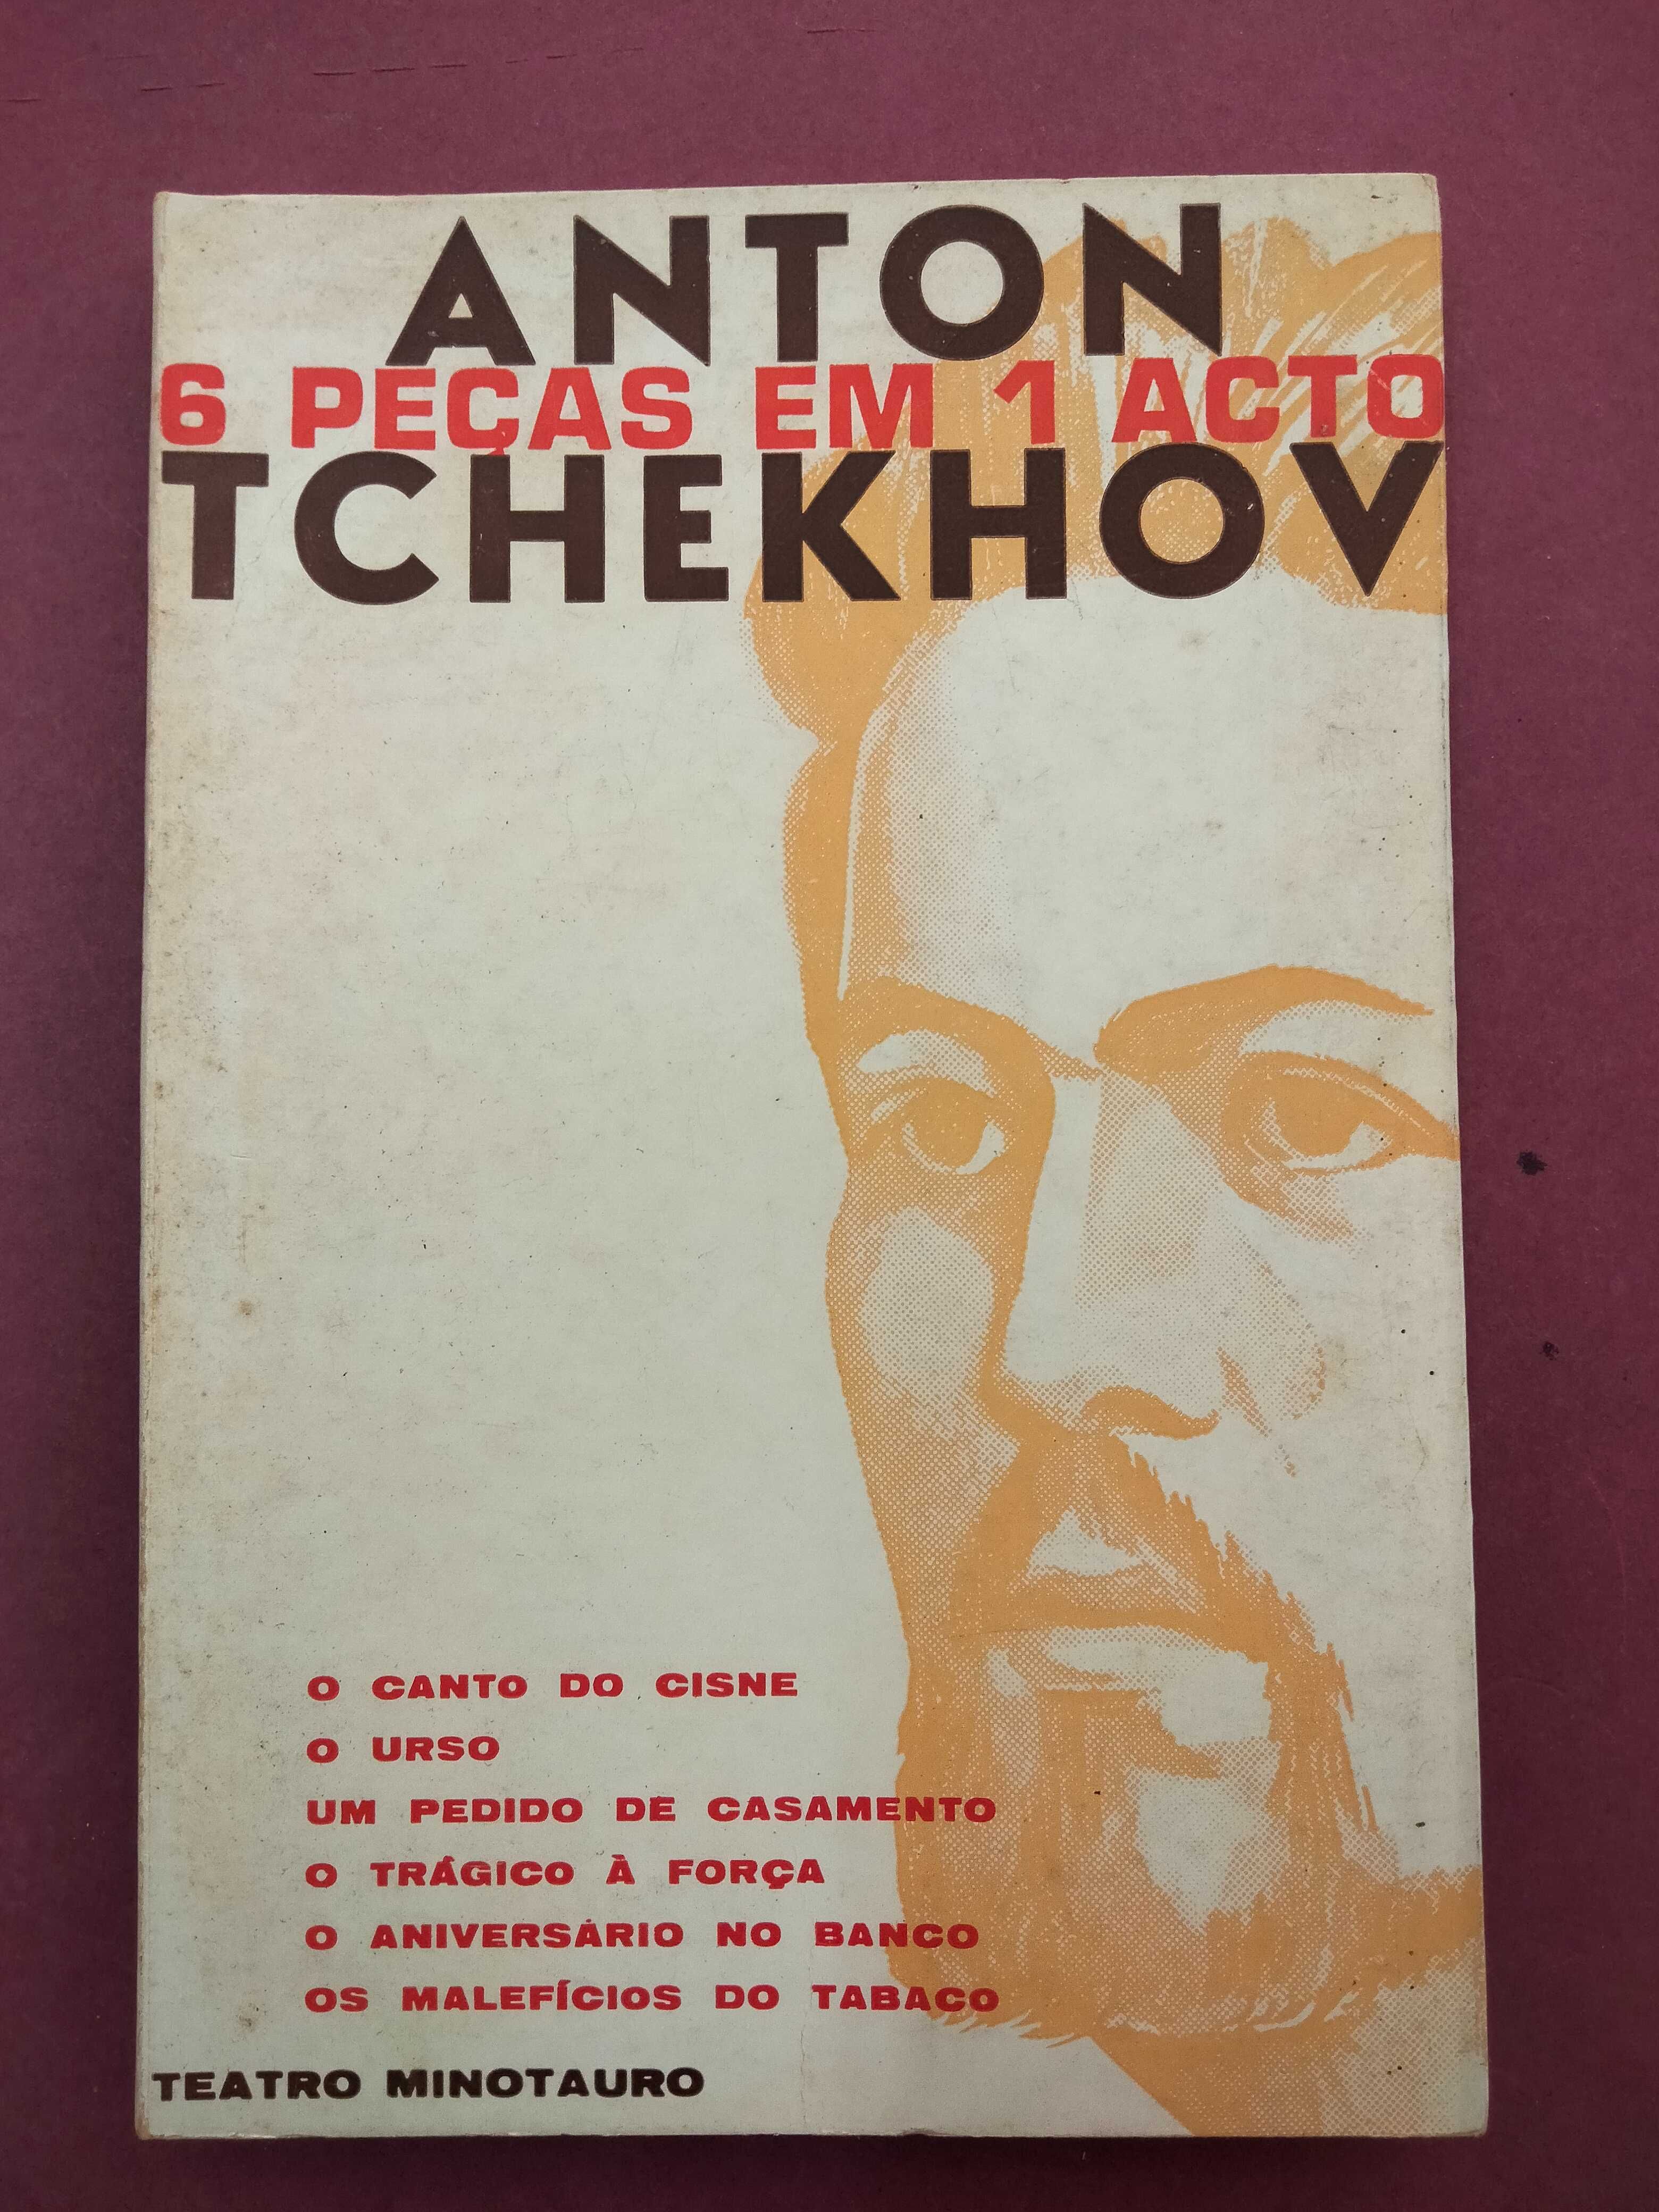 6 Peças em 1 Acto - Anton Tchekhov